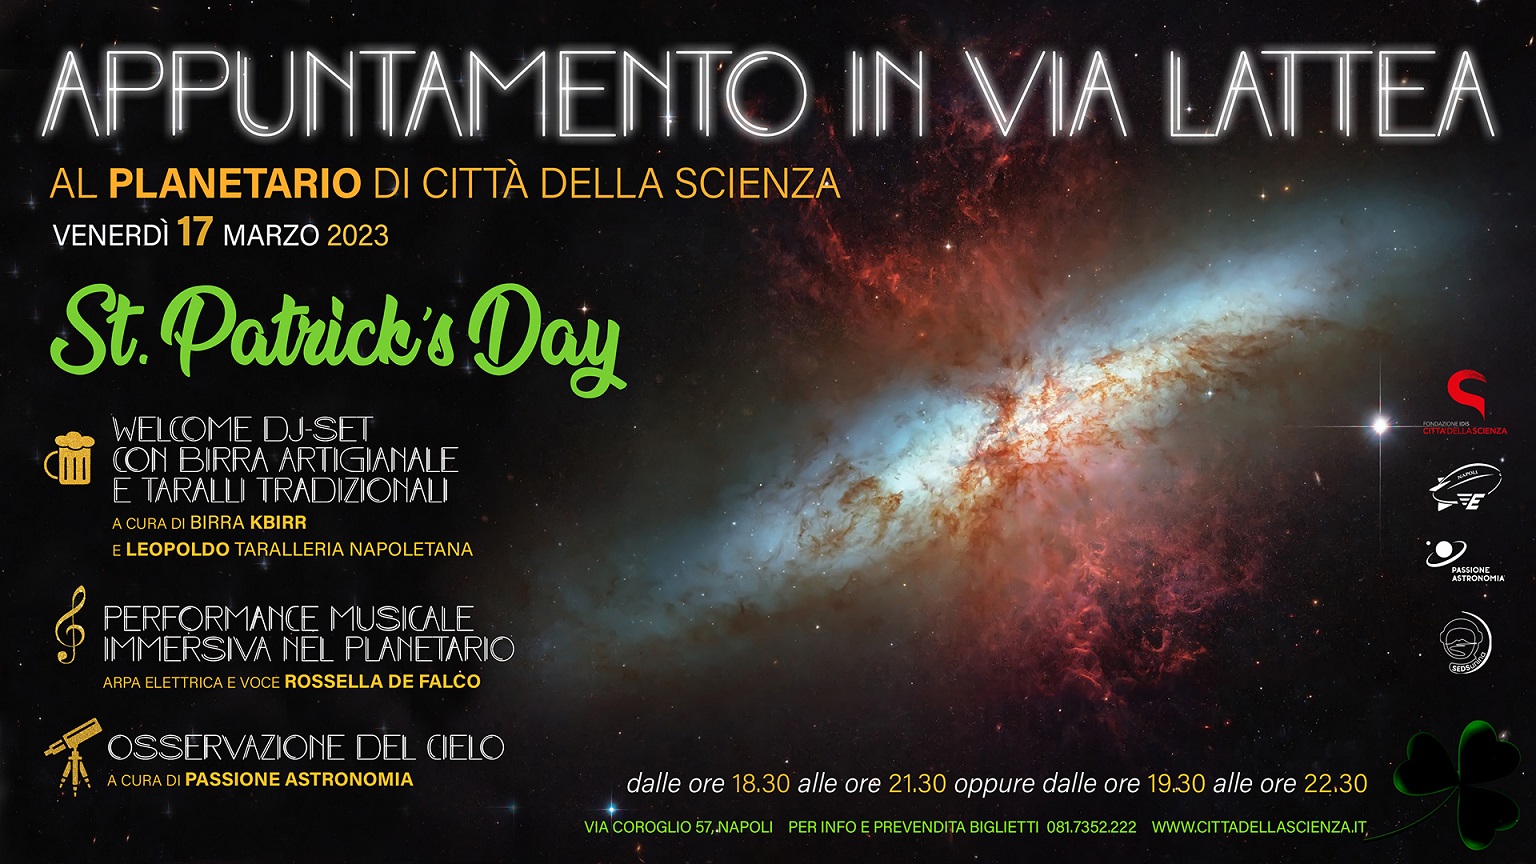 'Appuntamento in Via Lattea' al Planetario di Città della Scienza il 17 marzo 2023